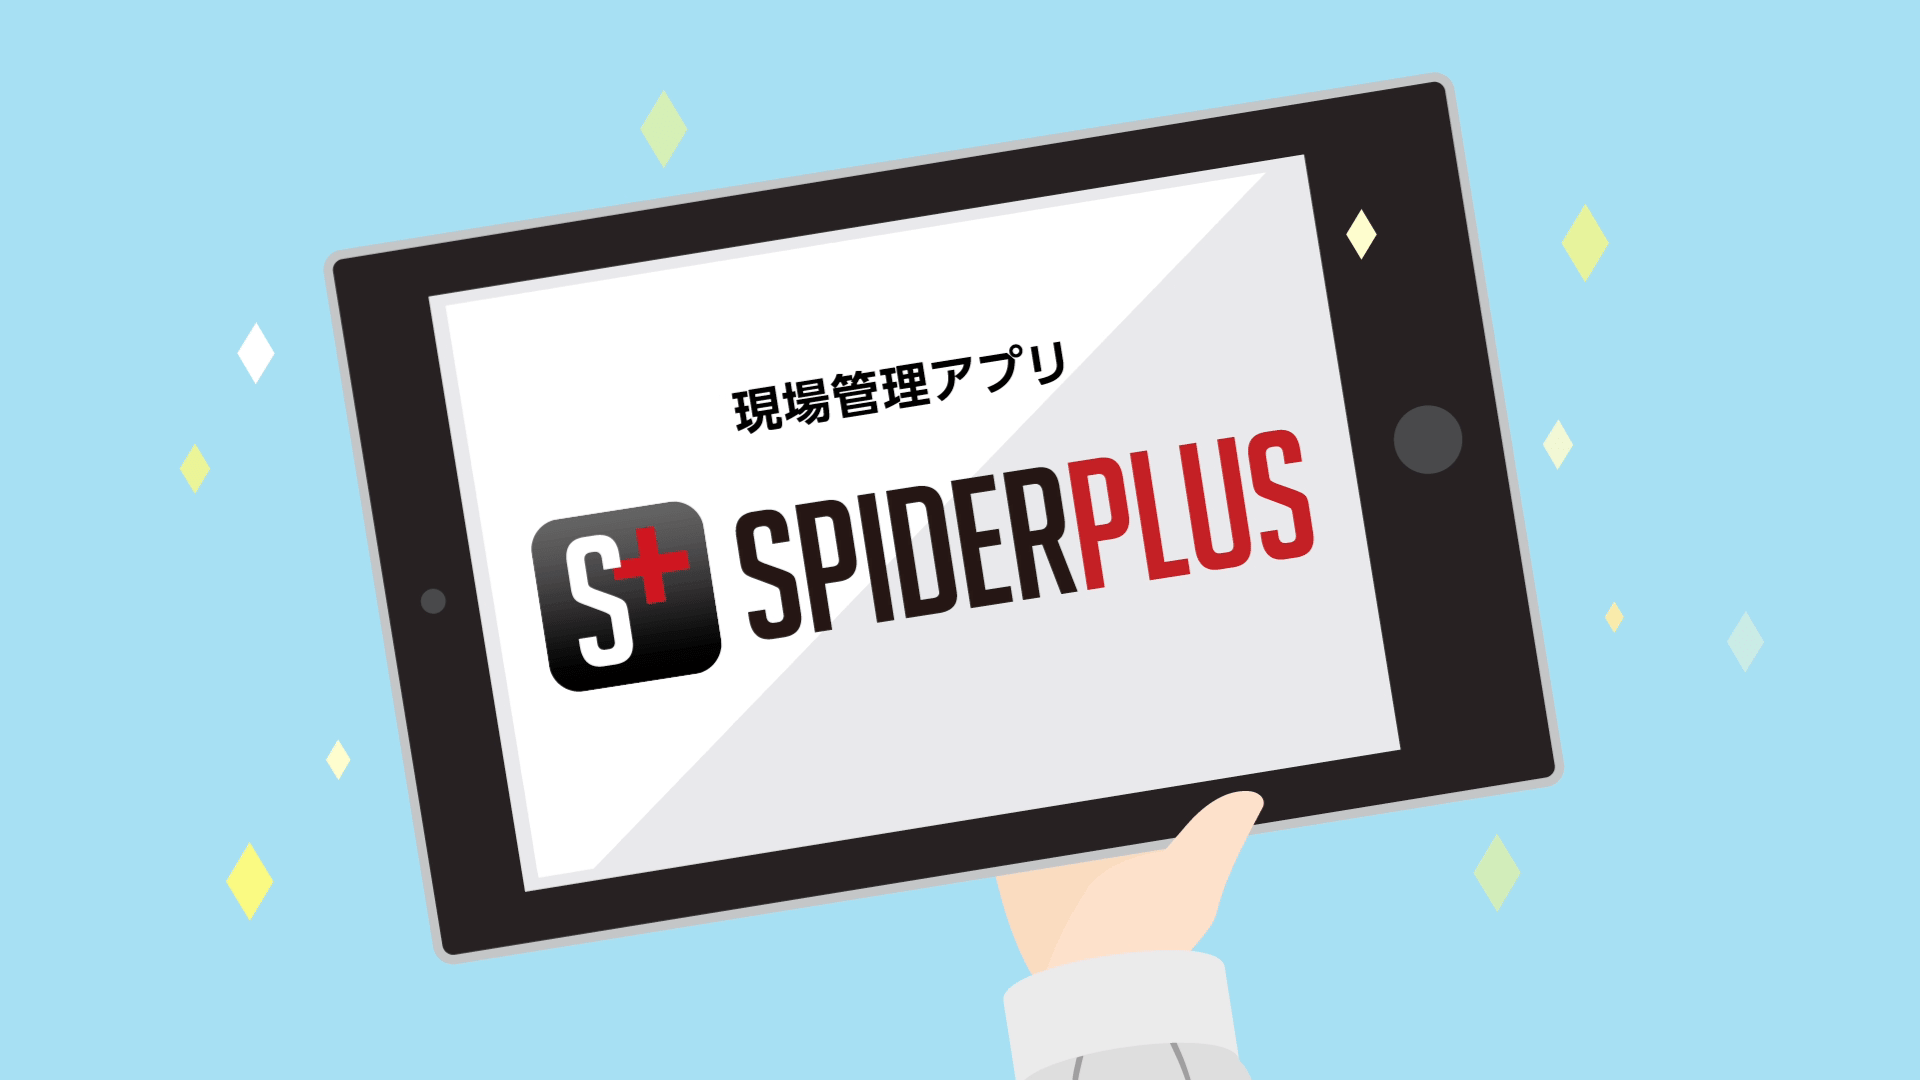 SpiderPlus